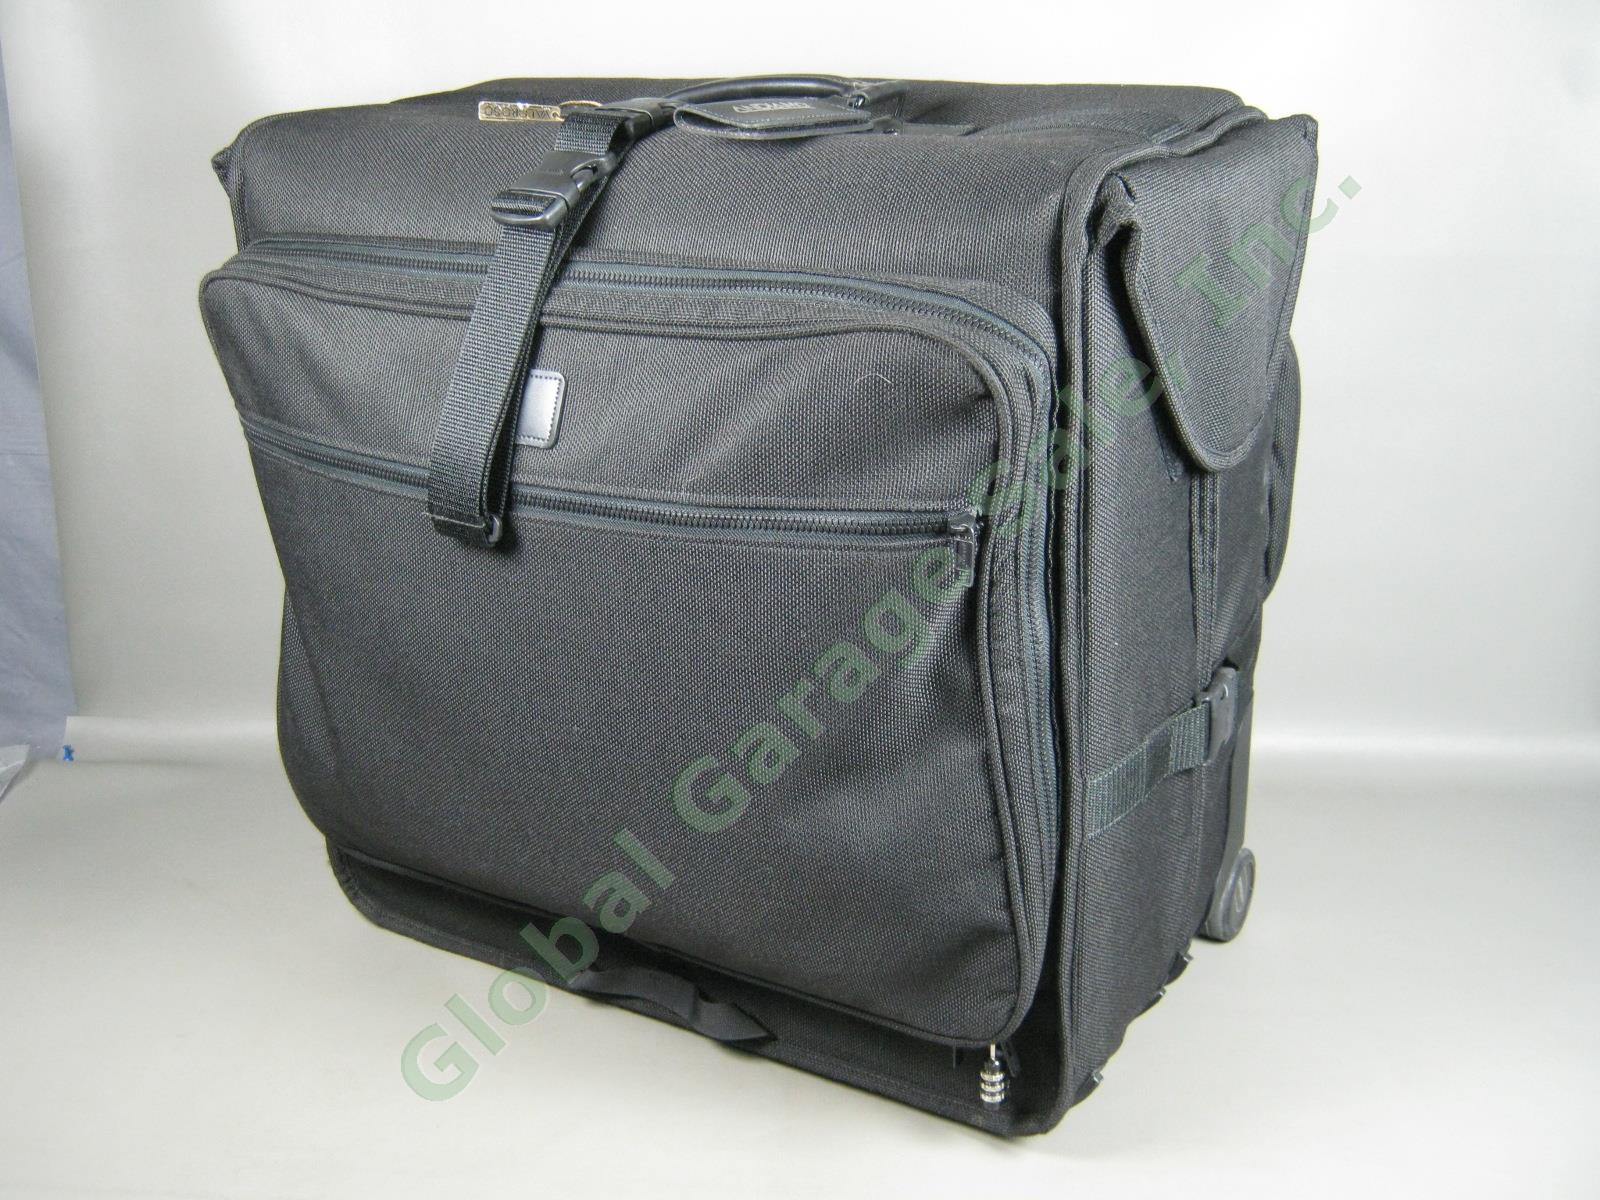 Andiamo Valoroso Wheeled Wardrobe Garment Bag Black Luggage 25x24x16 Exc Cond!